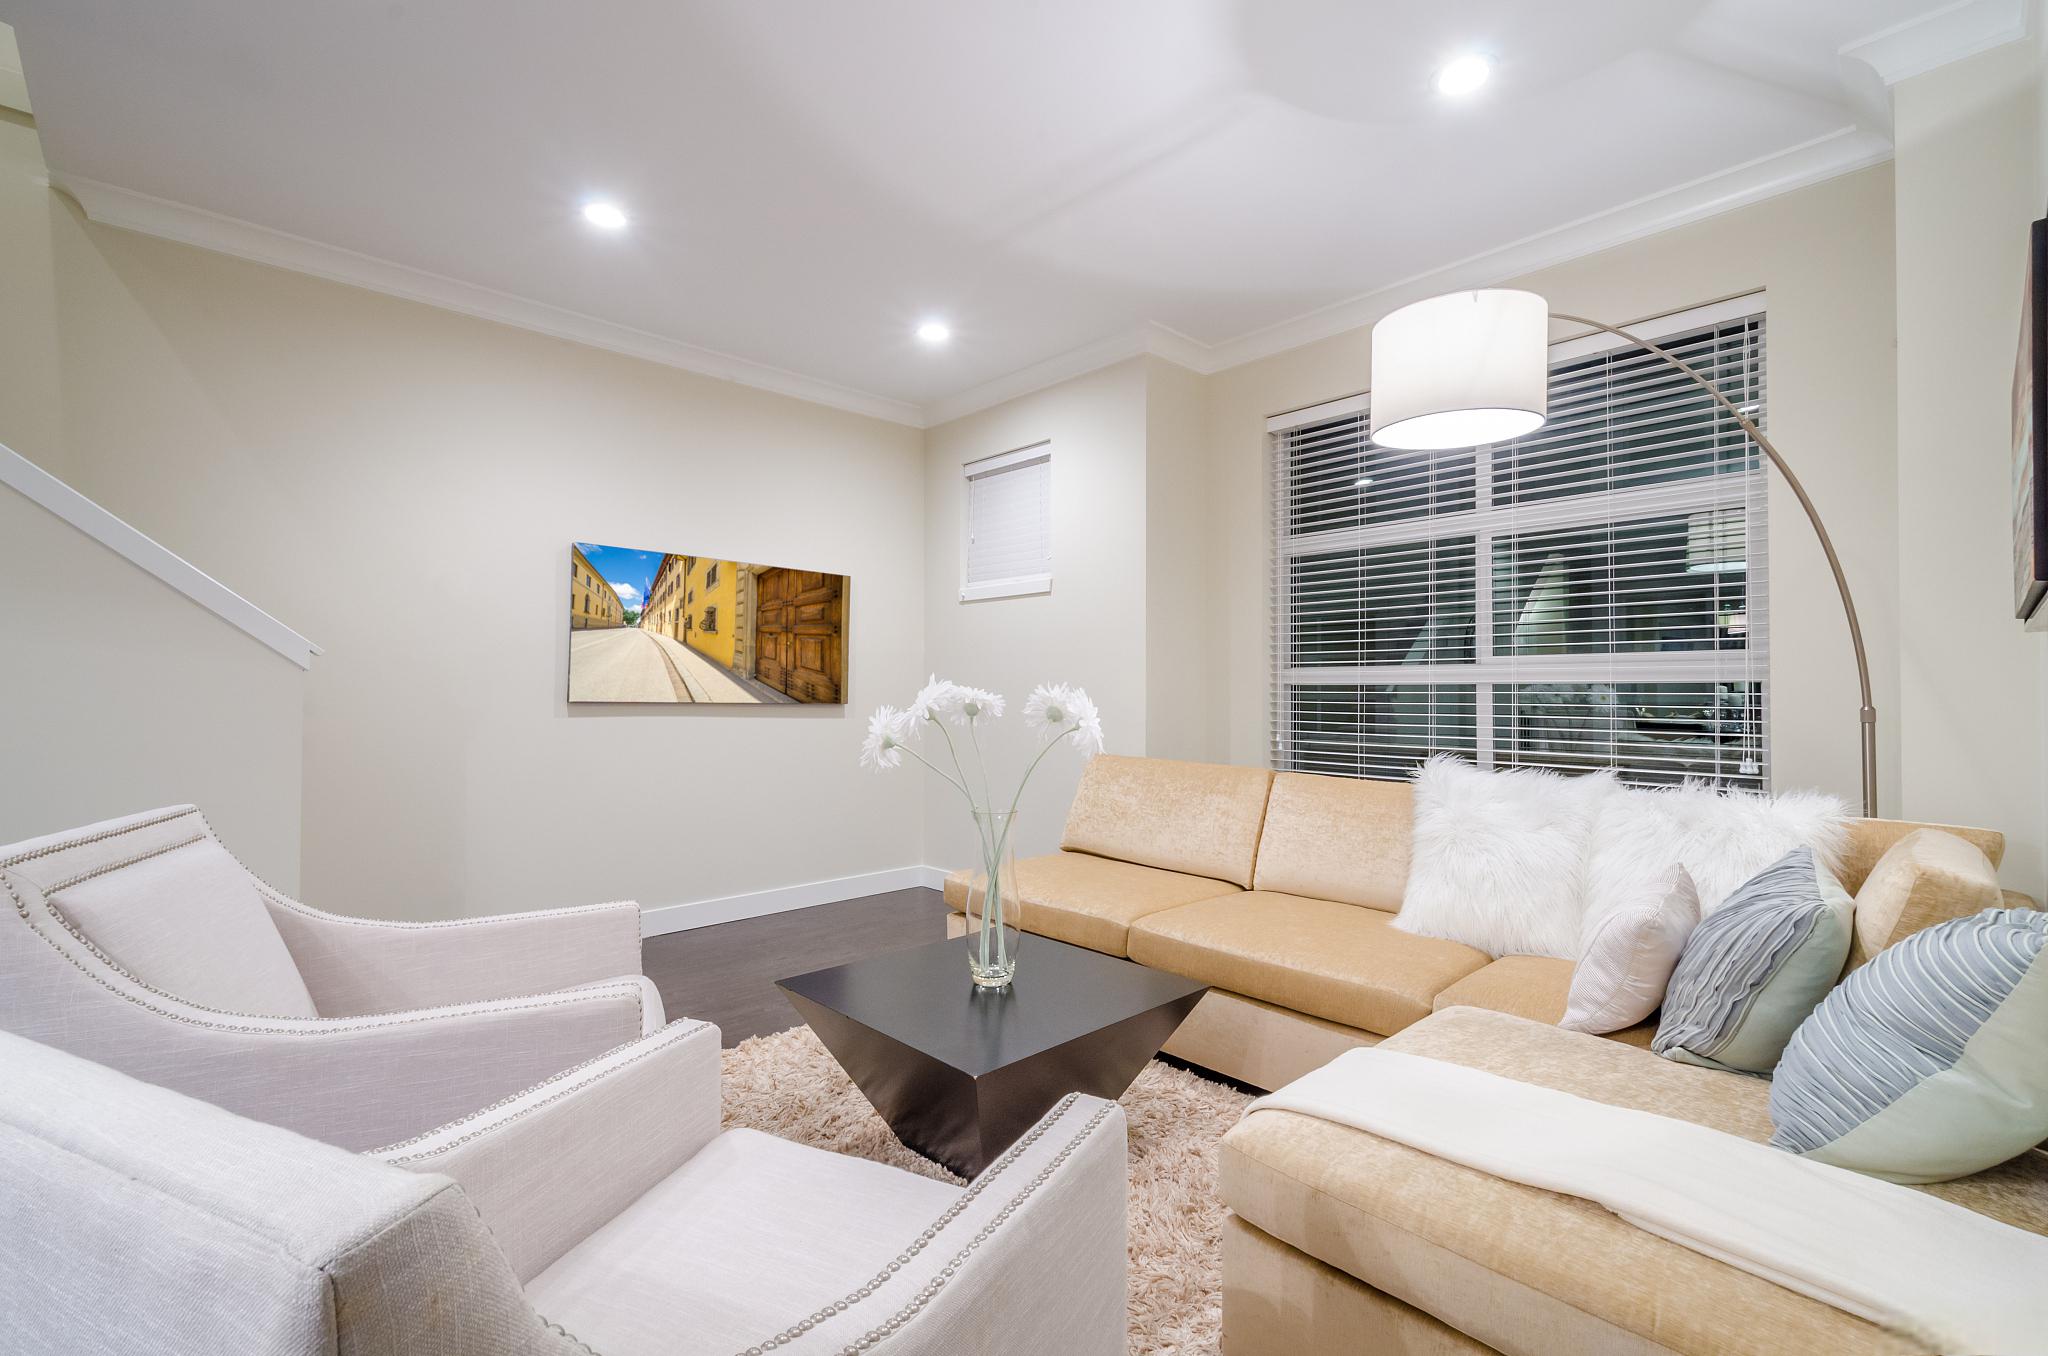 客厅筒灯布局实用方法 客厅筒灯是室内照明中常见的一种灯具,它能够